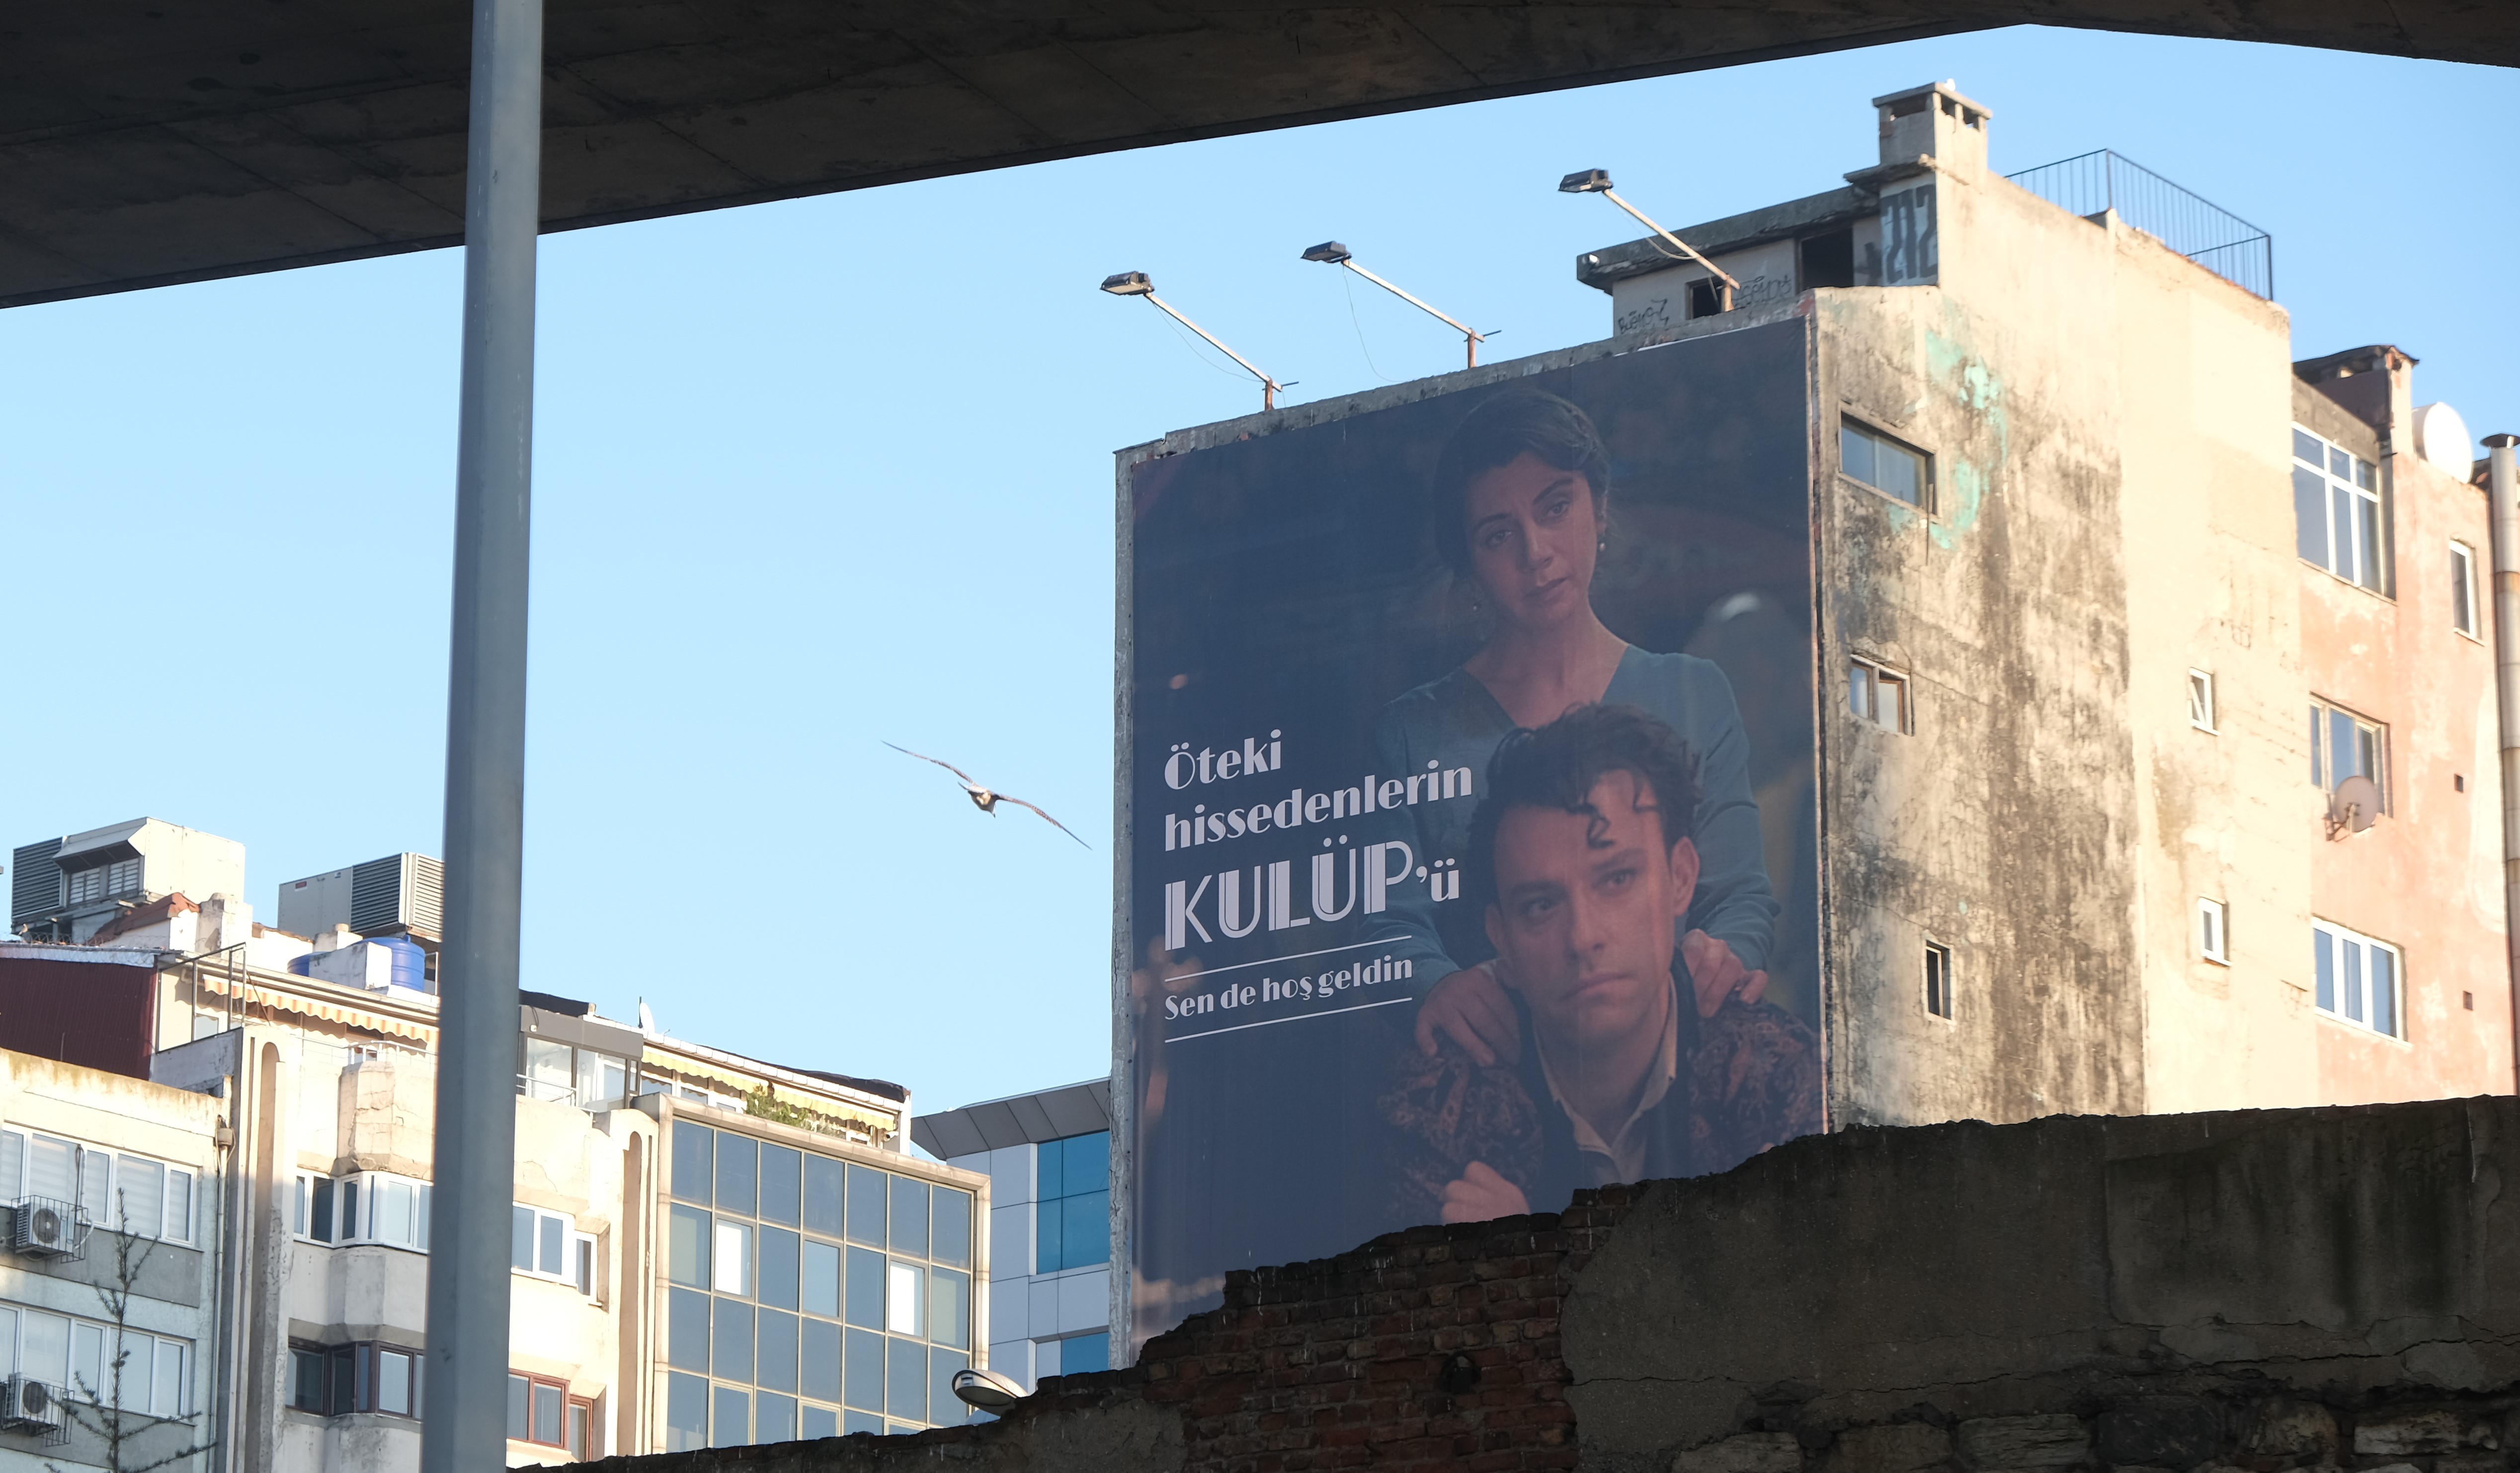 إعلان مسلسل "النادي" من نيتفليكس على جانب أحد المباني في اسطنبول - تركيا. Hoarding advertising Netflix' "The Club" series on the side of a building in Istanbul (photo: Volkan Kisa)